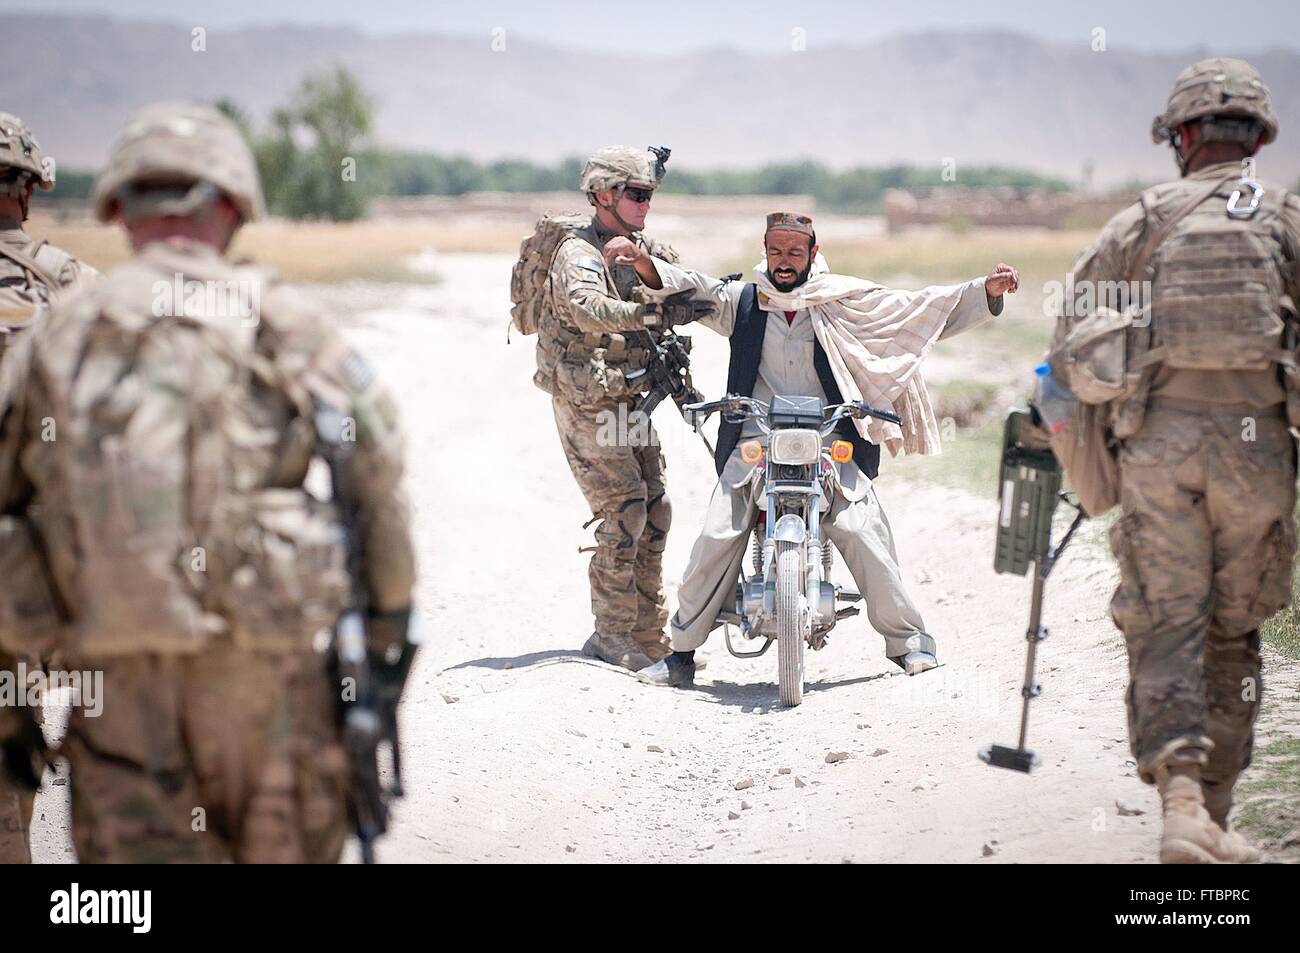 Stati Uniti Paracadutisti dell'esercito con l'ottantaduesima Airborne Division fermare un motociclista alla ricerca durante una scansione per congegni esplosivi improvvisati lungo una strada mentre di pattuglia Giugno 30, 2012 in provincia di Ghazni, Afghanistan. Foto Stock